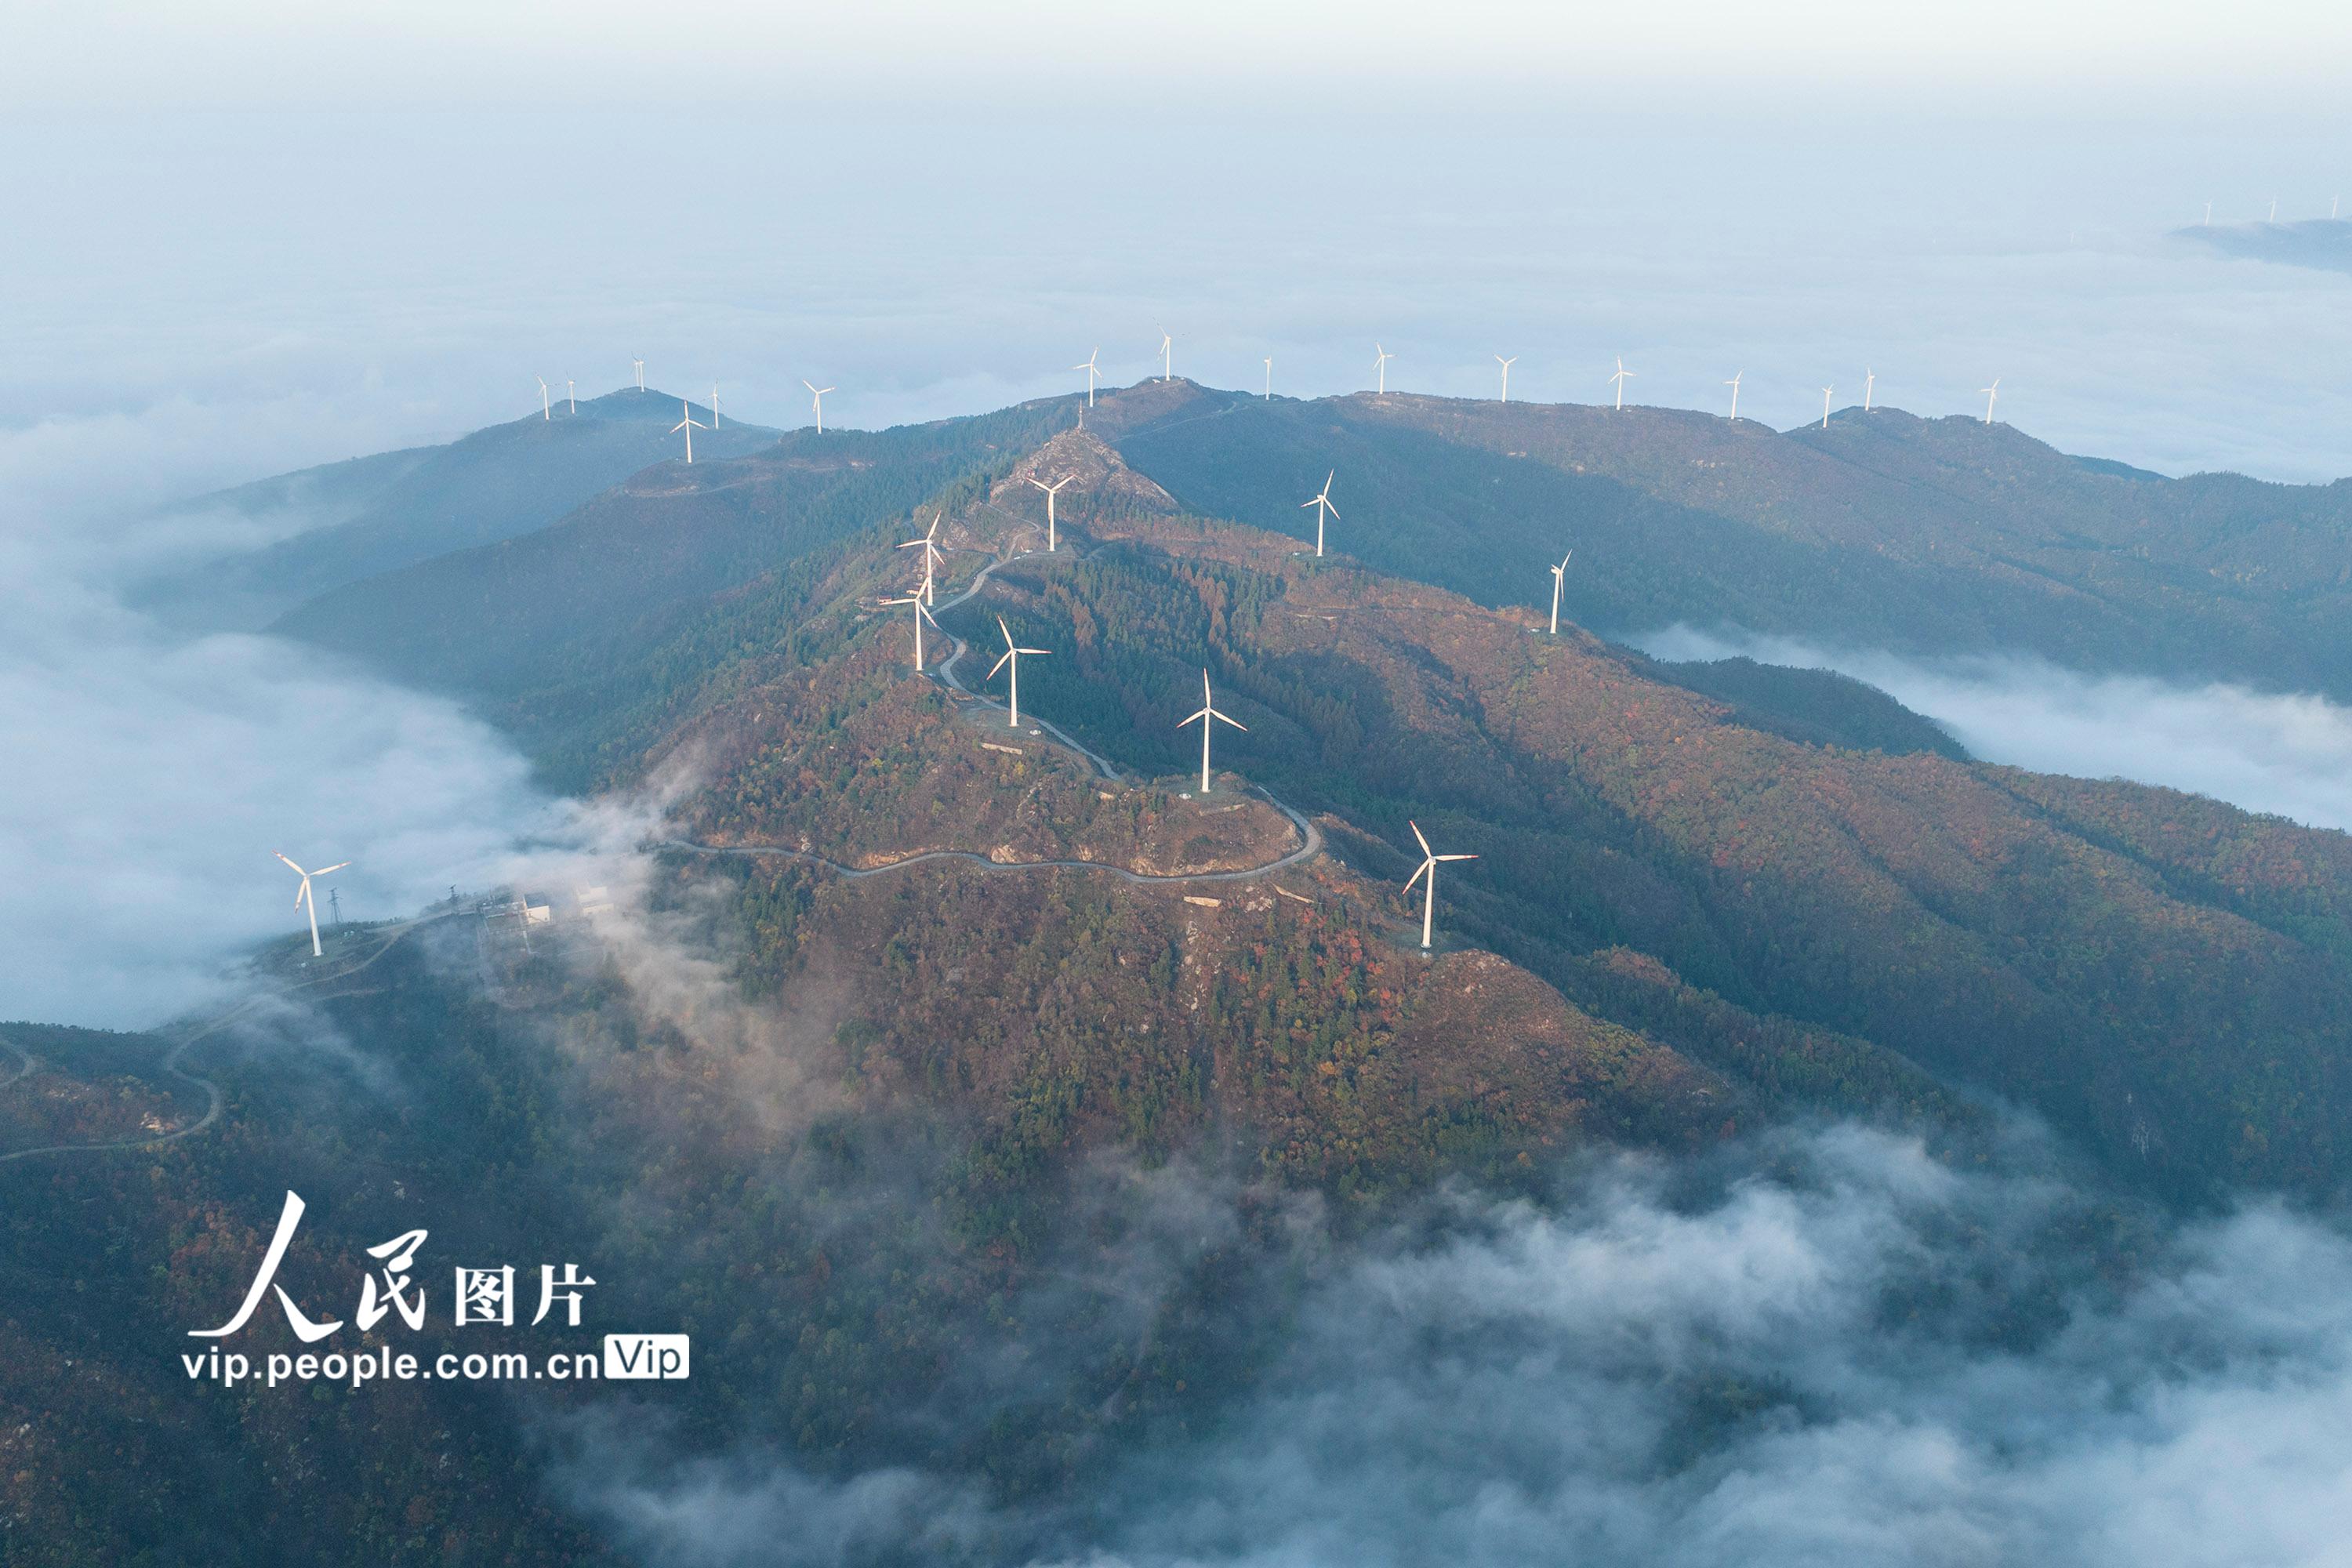 湖北省孝感市大悟县吕王镇仙居顶的风力发电机与云海相映成景。